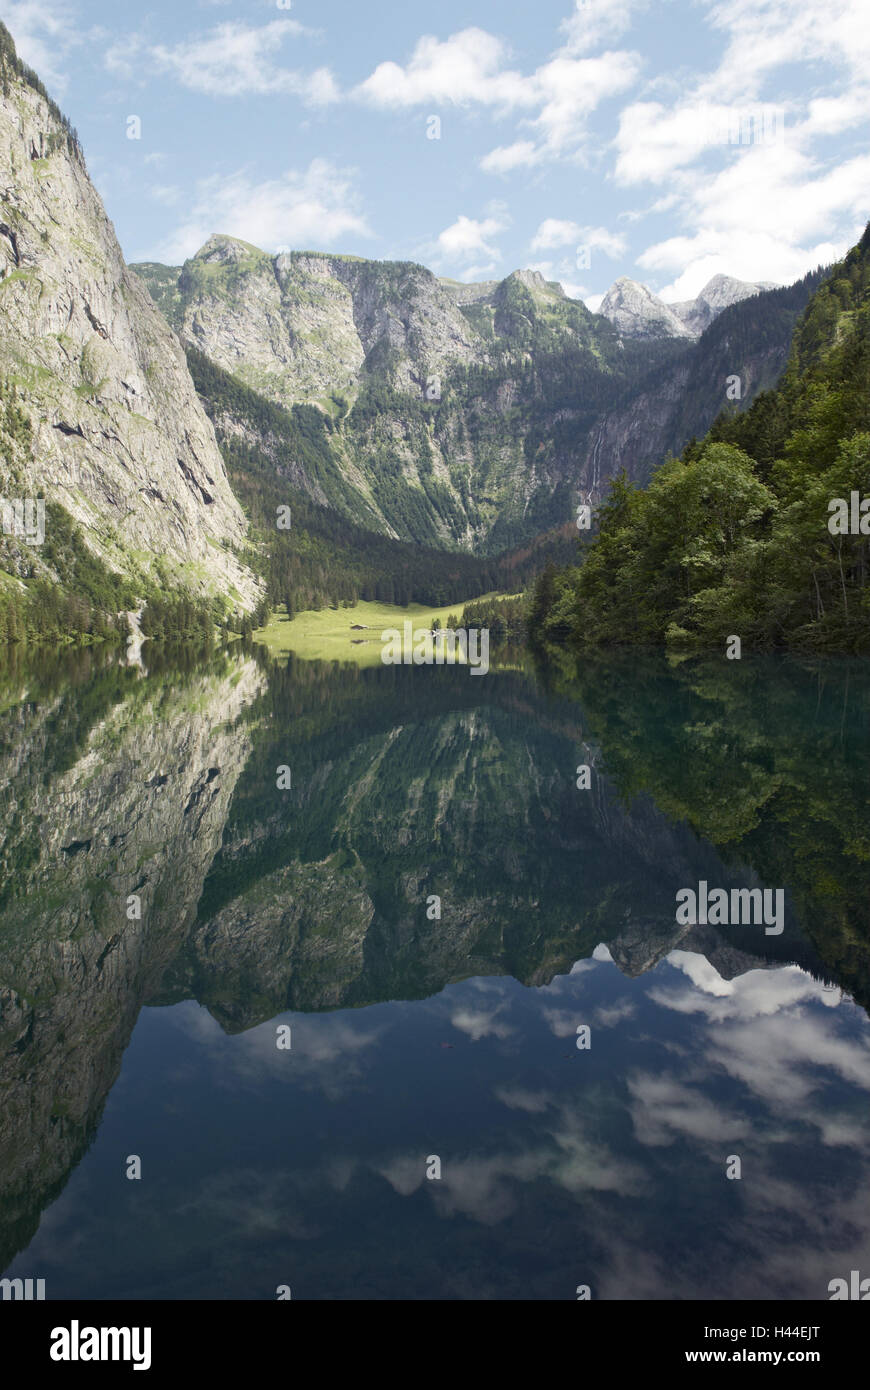 Lago, montagne, rive, alp, acqua, mirroring, cielo, nuvole, in Germania, in Baviera, Baviera, Berchtesgaden, il Königssee, lago superiore, Foto Stock